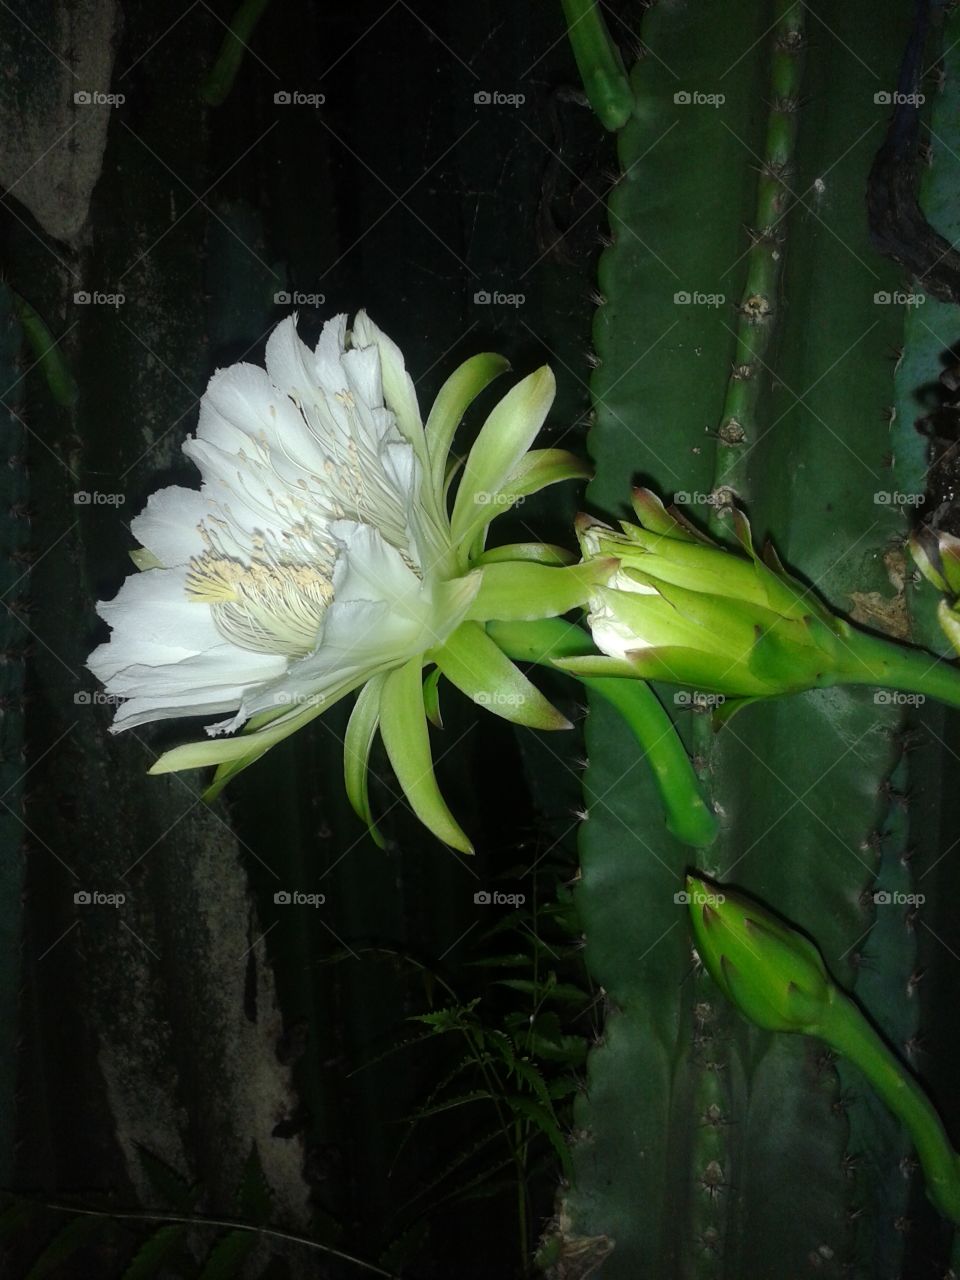 night flower